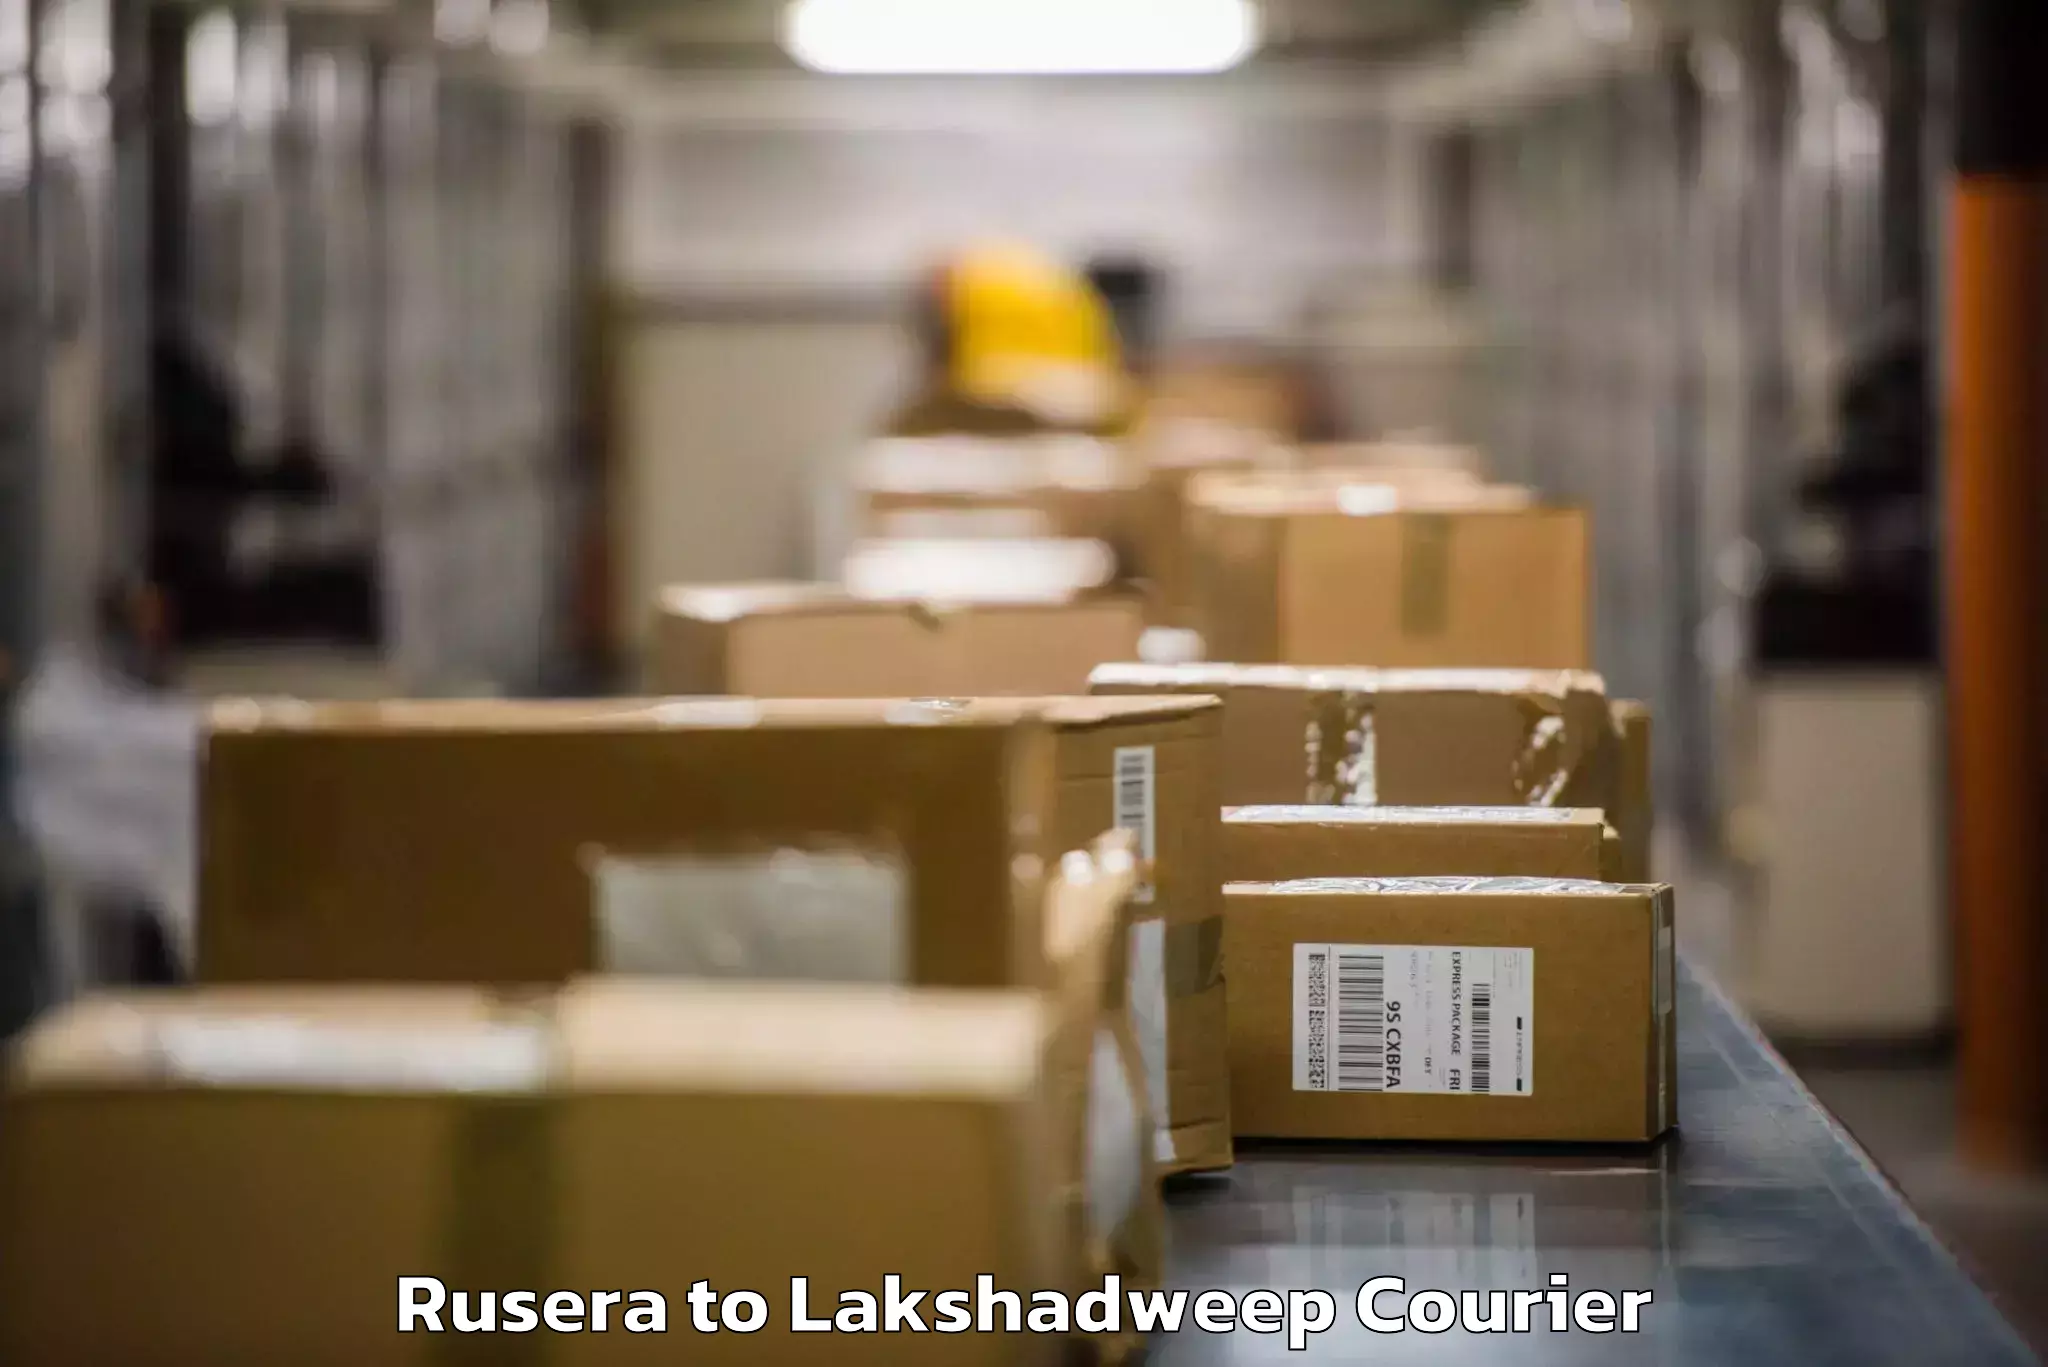 Baggage shipping experts Rusera to Lakshadweep